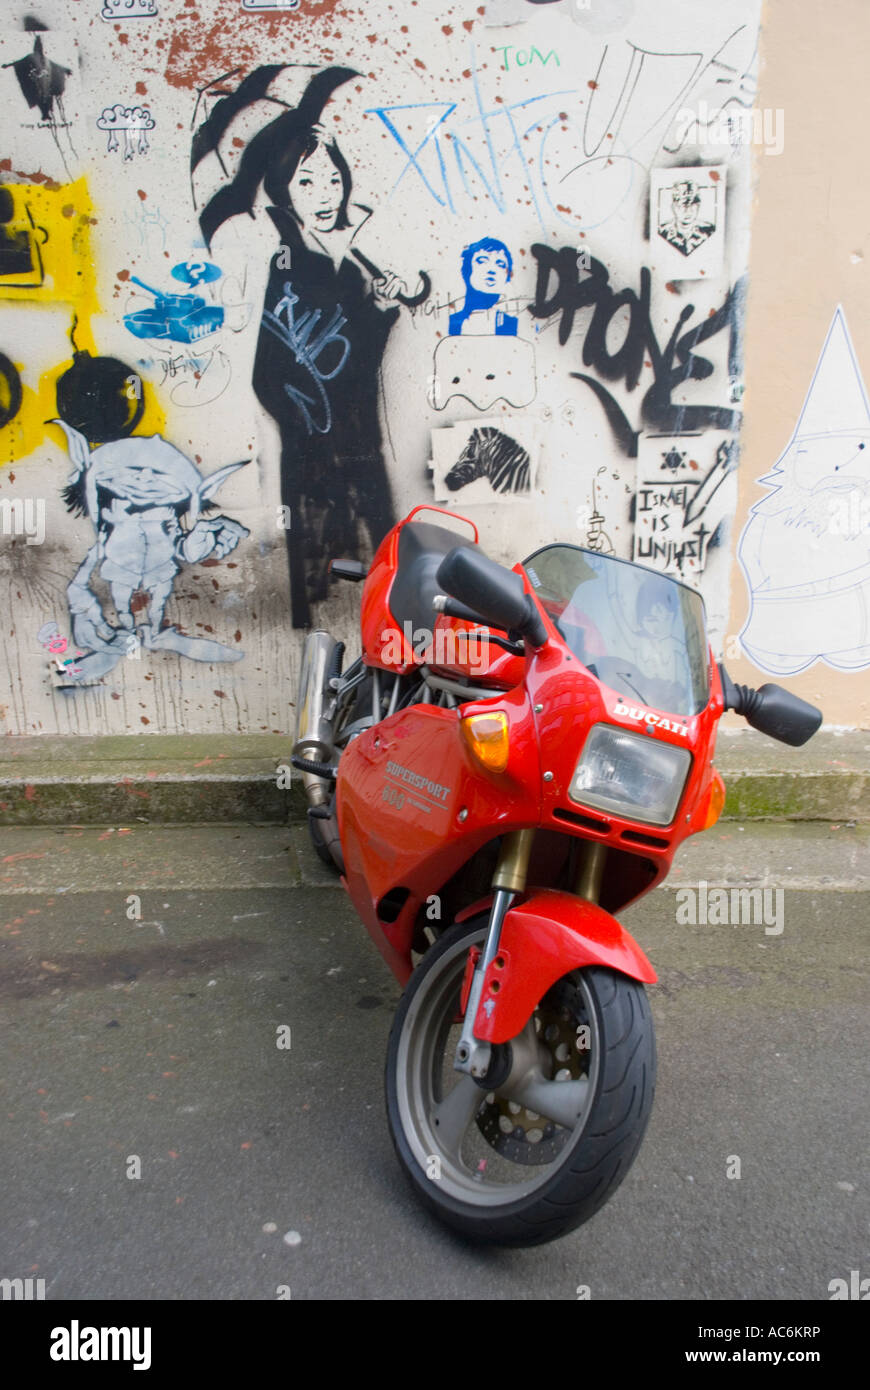 Rosso Ducati Supersport 600 e la parete art graffiti Foto stock - Alamy